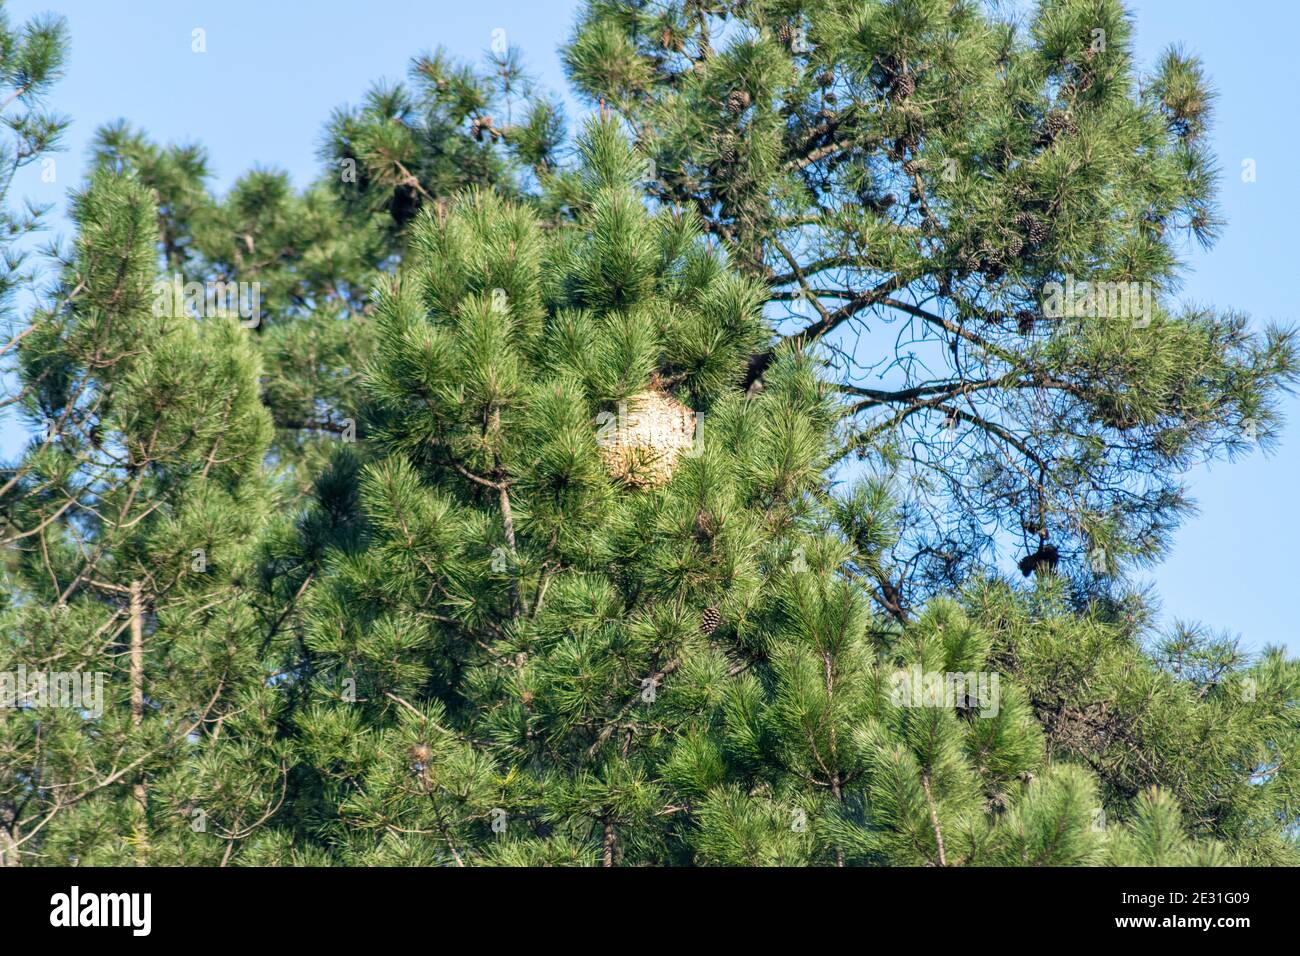 Asian Hornet nest on pine tree Stock Photo